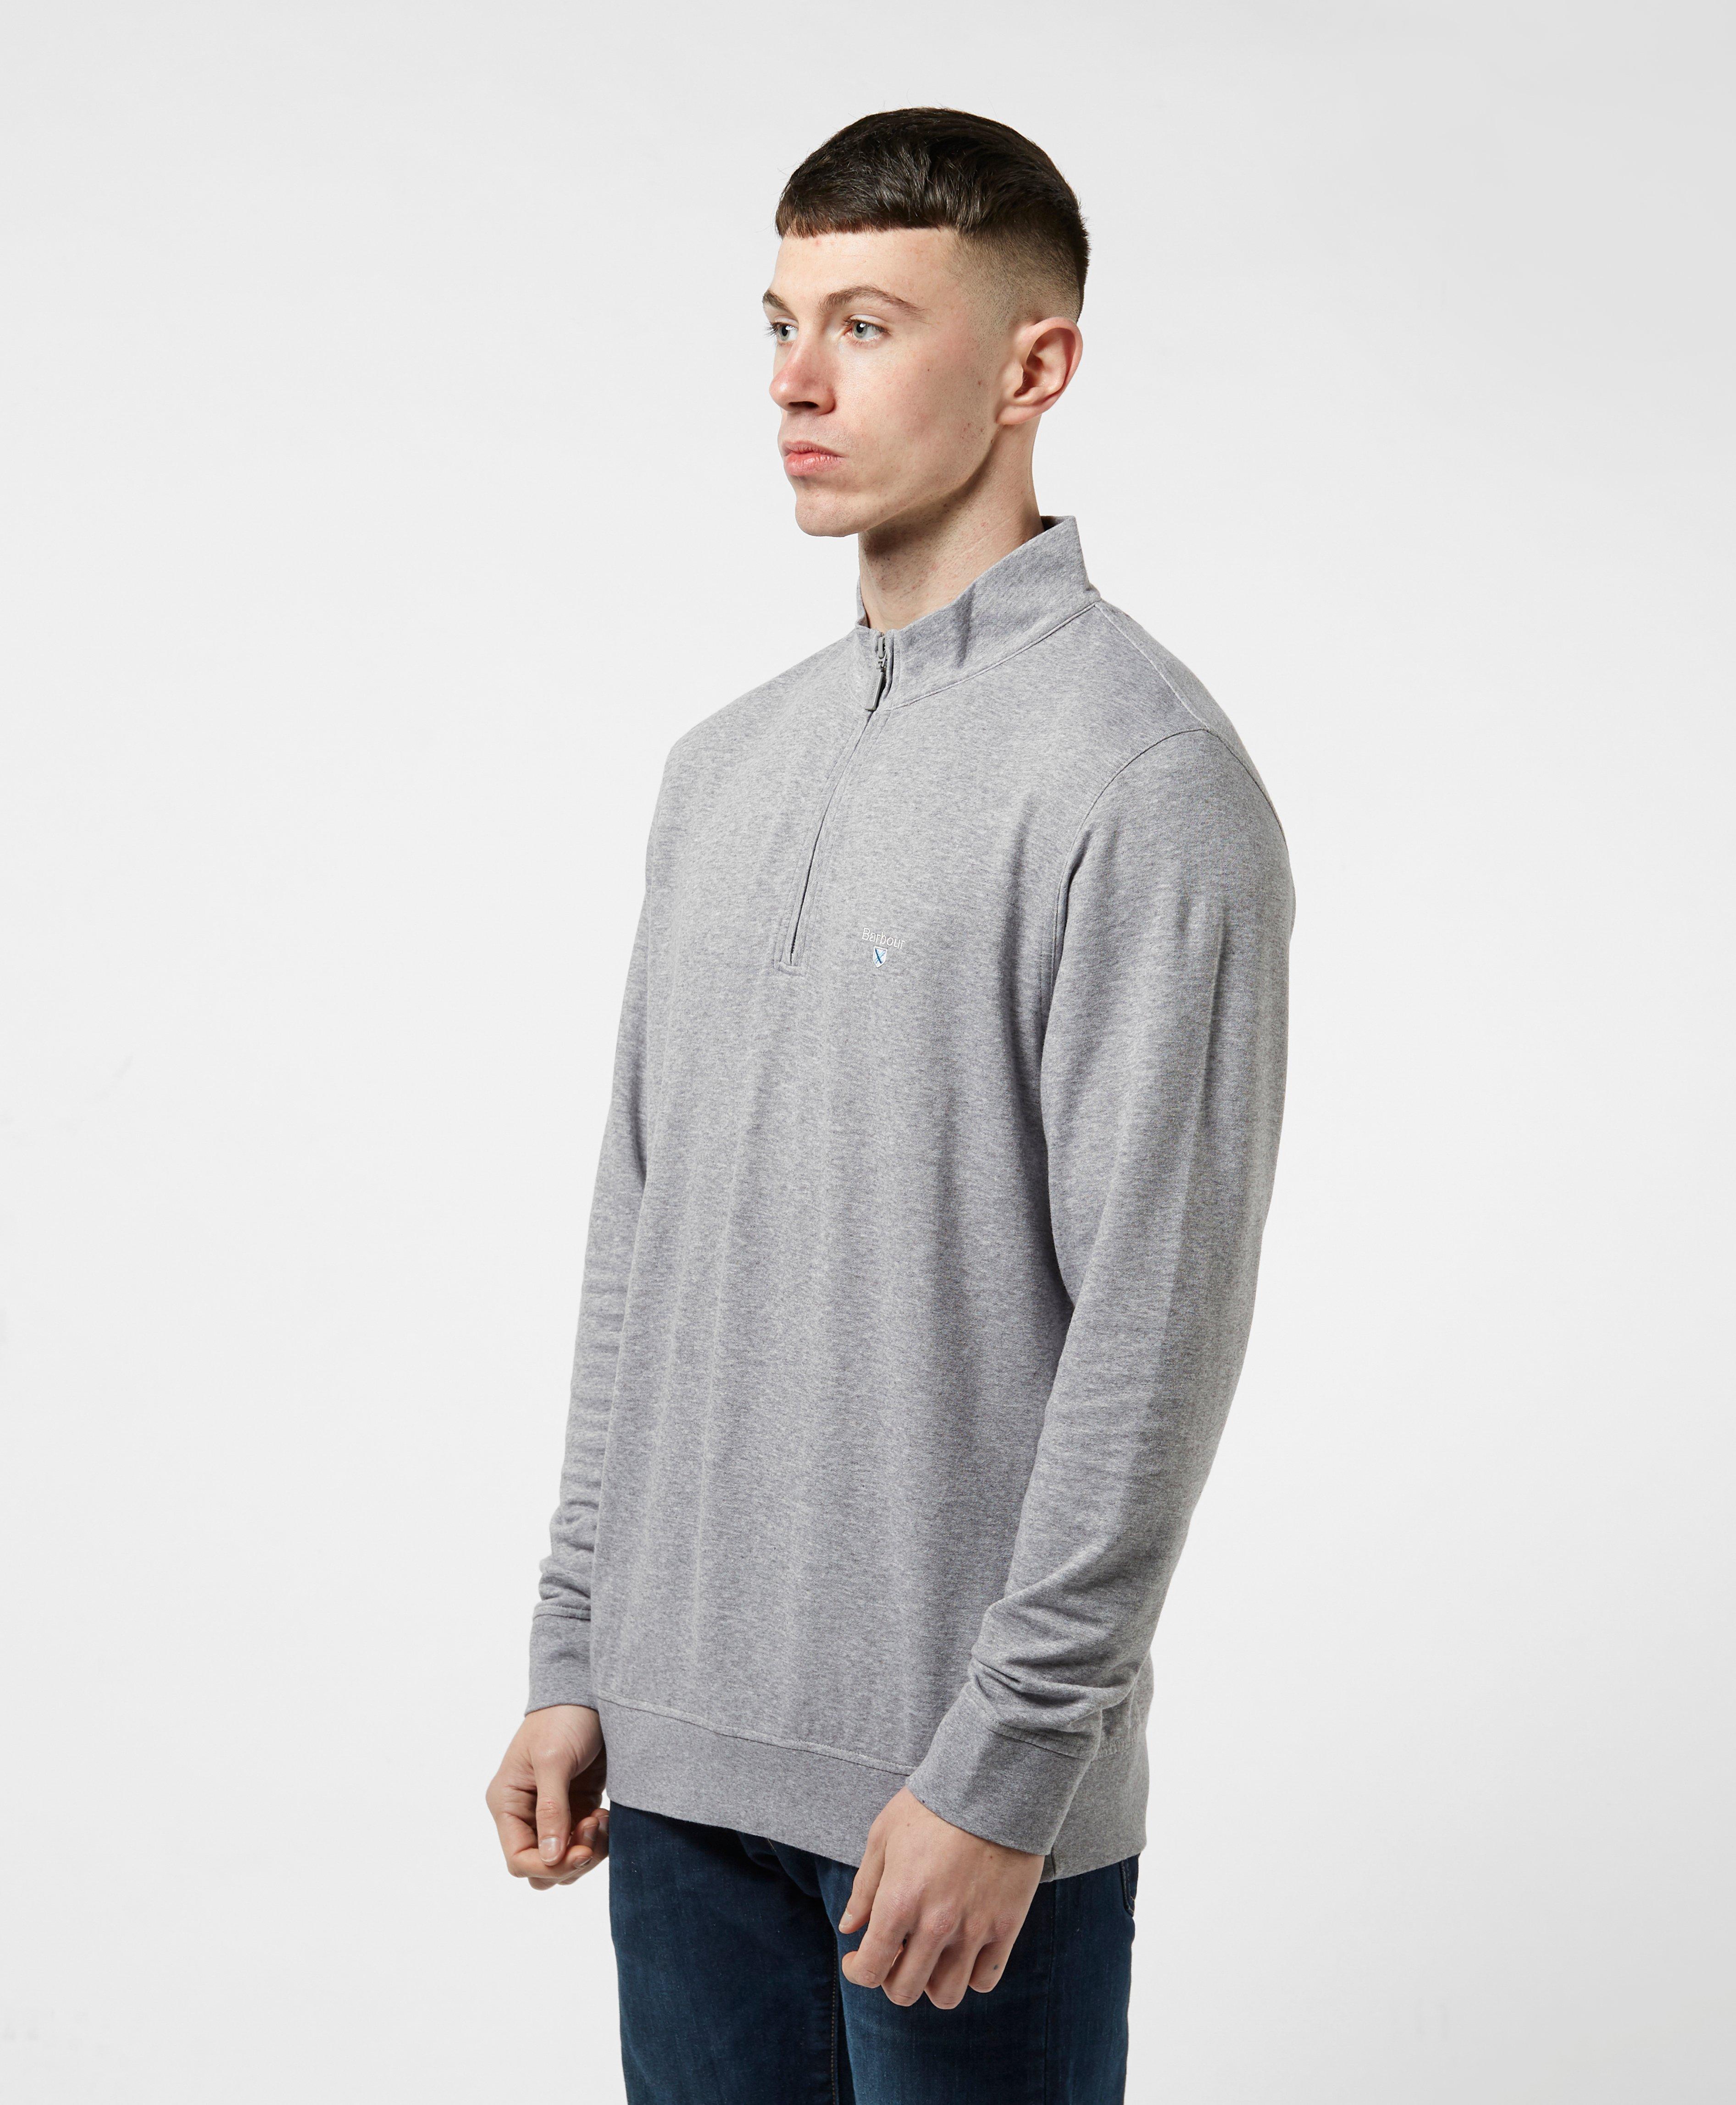 Barbour Batten Half-zip Sweatshirt in Grey (Gray) for Men - Lyst